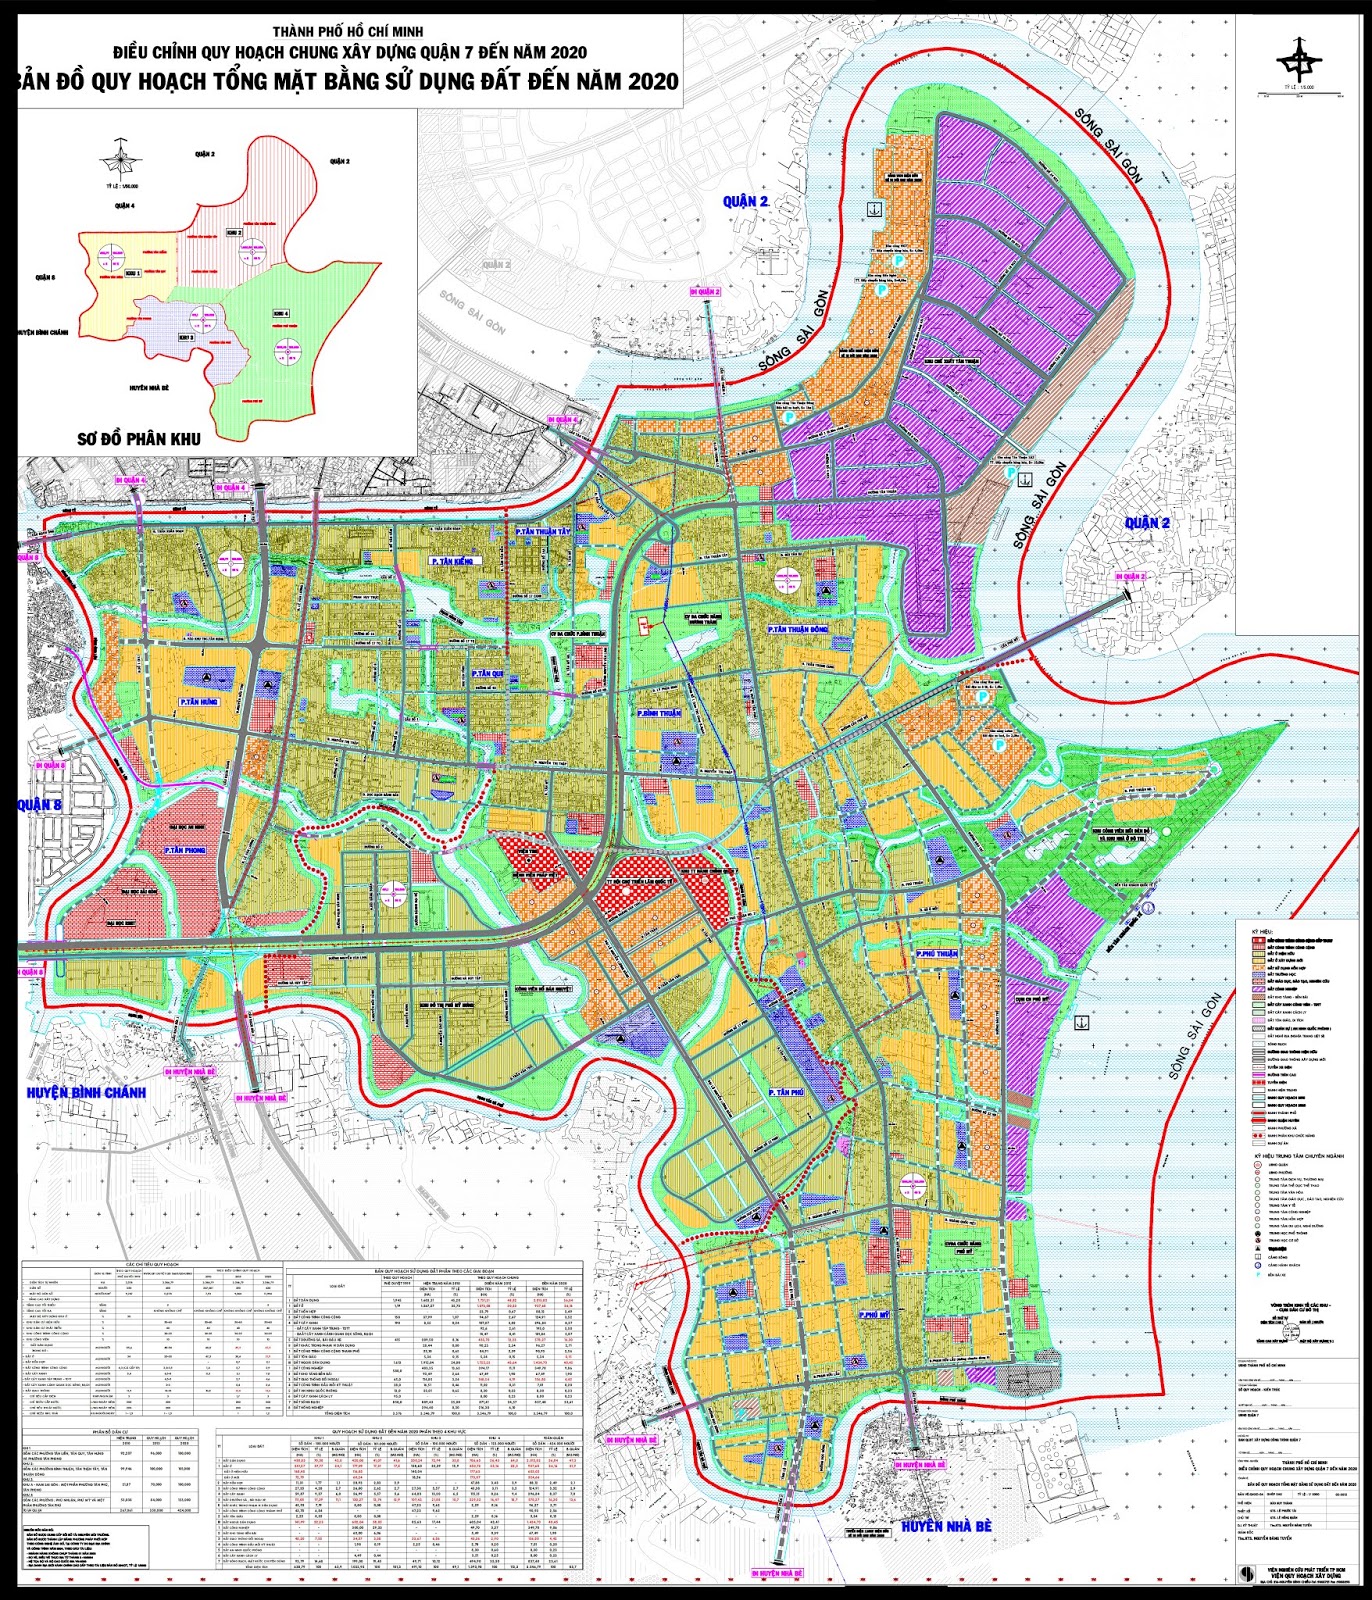 Bản đồ quy hoạch quận 7 mới nhất 2021 sẽ cho bạn những thông tin về các dự án phát triển đang diễn ra, từ các khu đô thị toàn diện đến các tính năng hiện đại. Hãy cùng xem hình ảnh để đón nhận những thay đổi mới và đẹp mắt của quận